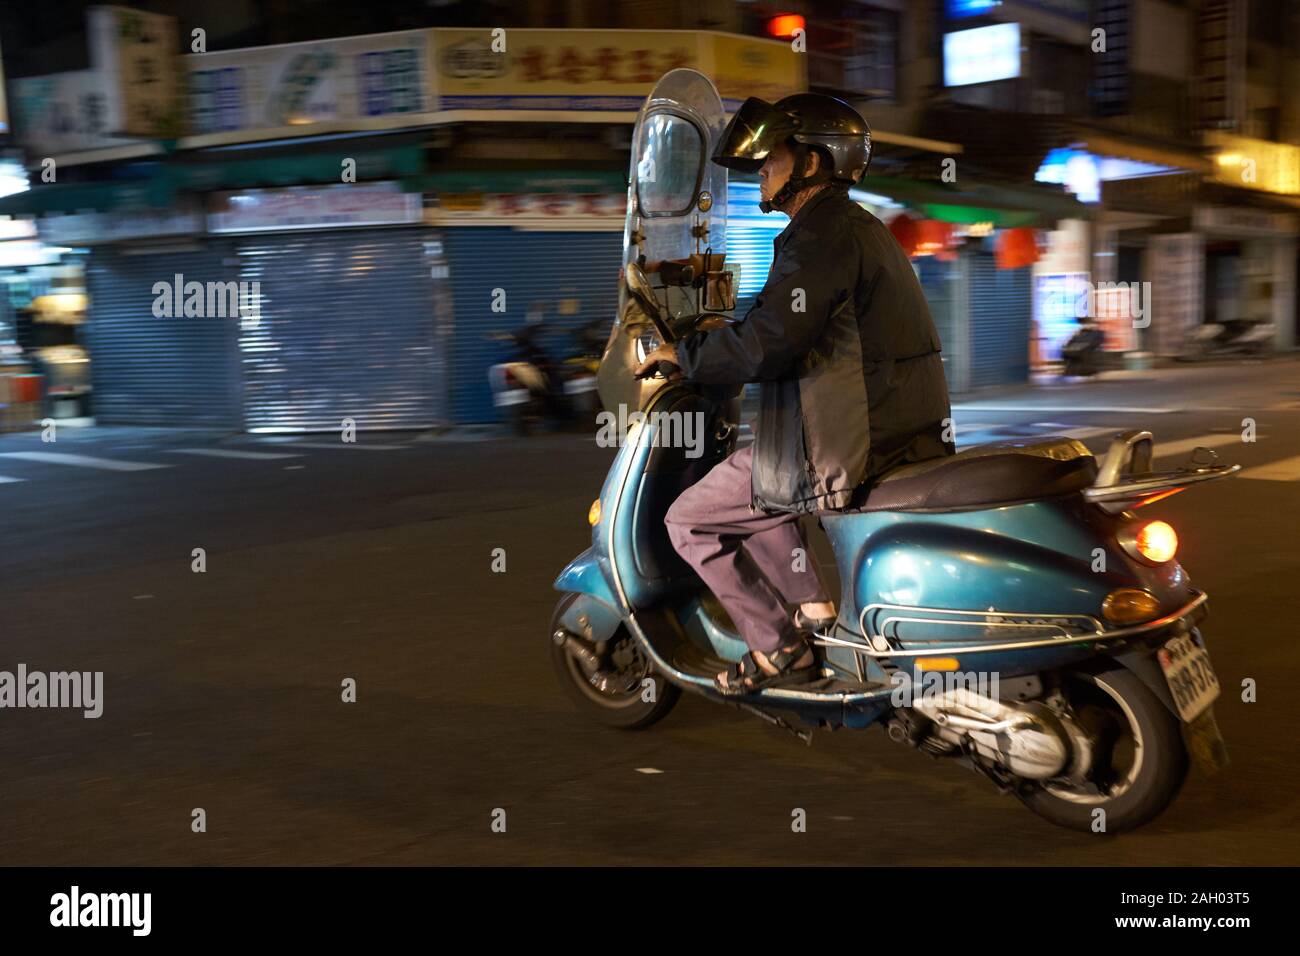 Man Riding Motor Scooter at Night, Taipei, Taiwan Stock Photo